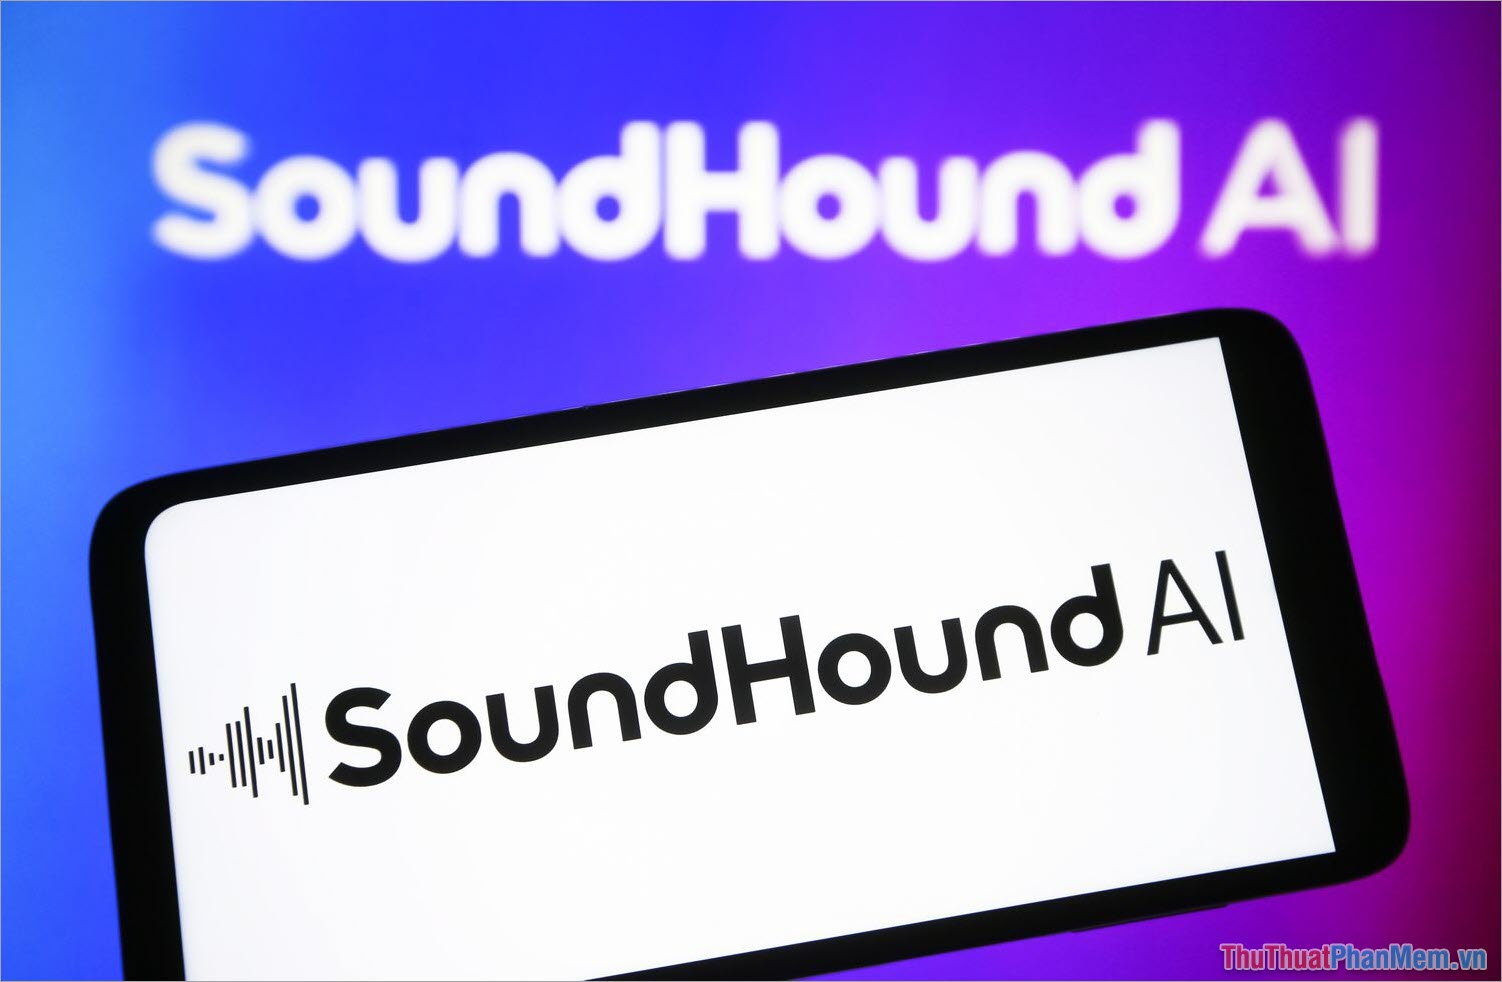 SoundHound – App tìm kiếm nhạc chính xác nhất